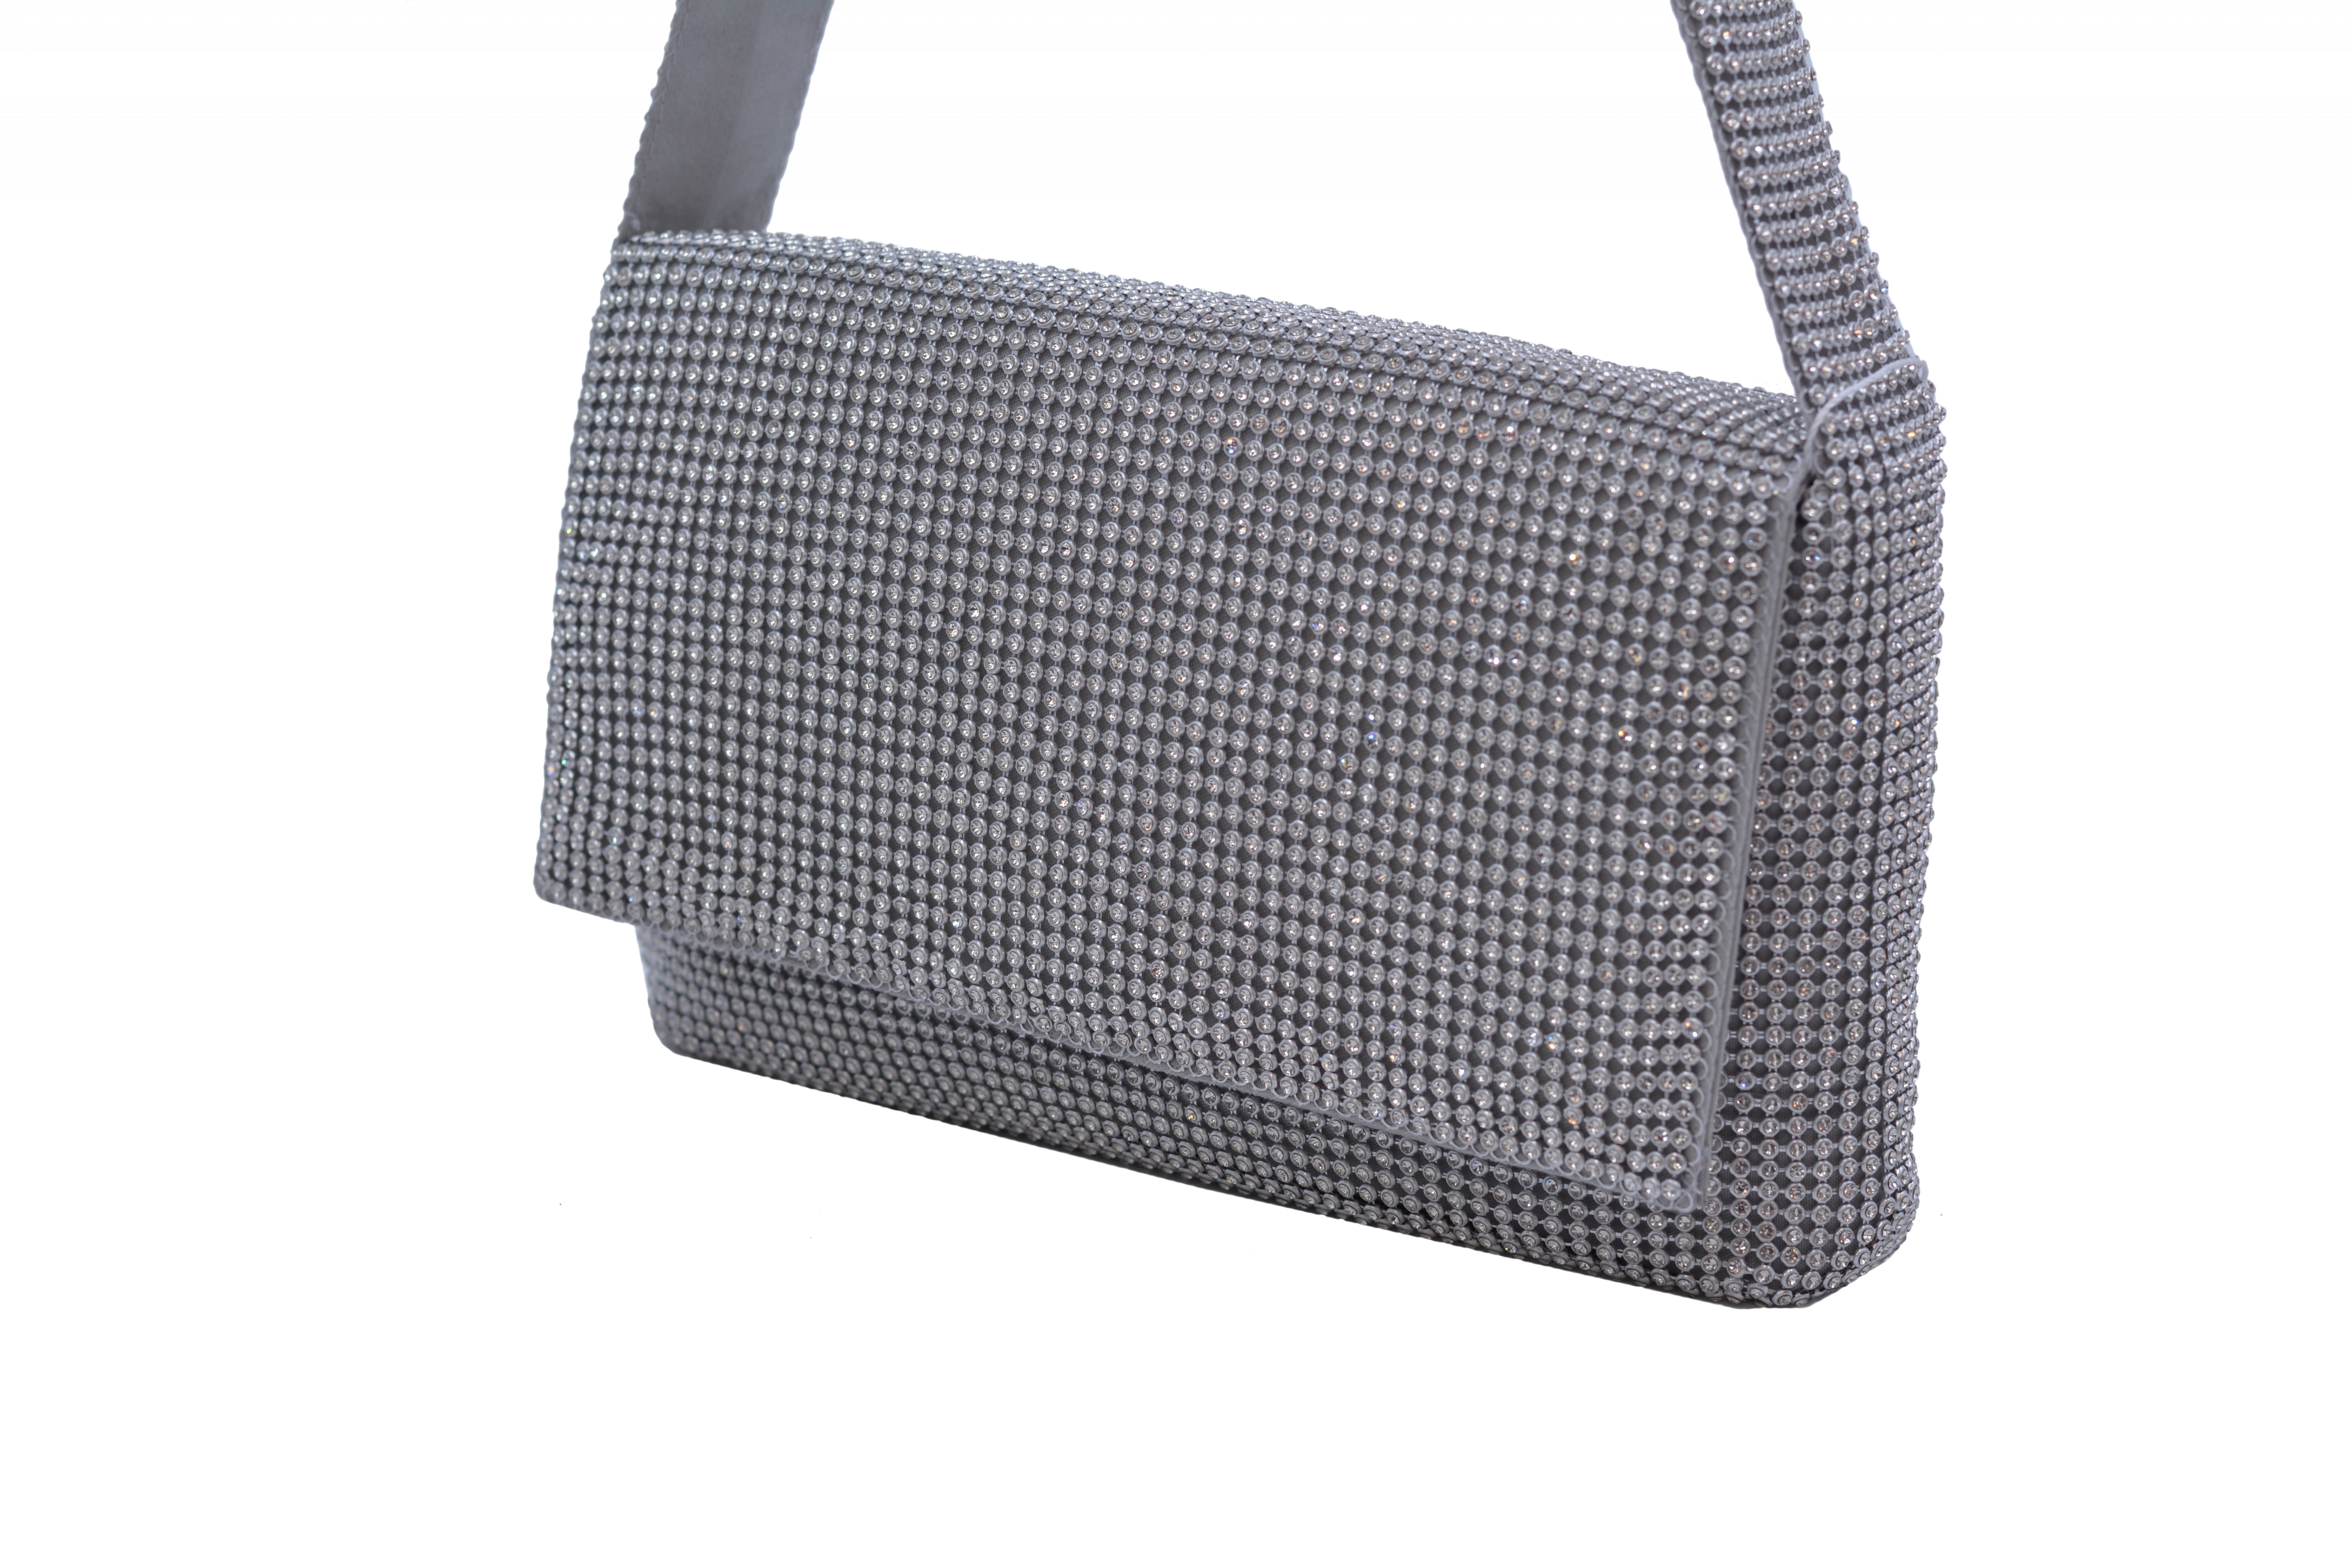 Společenská kabelka Stříbrná, 24 x 8 x 15 (MN00-L9006-25STR)